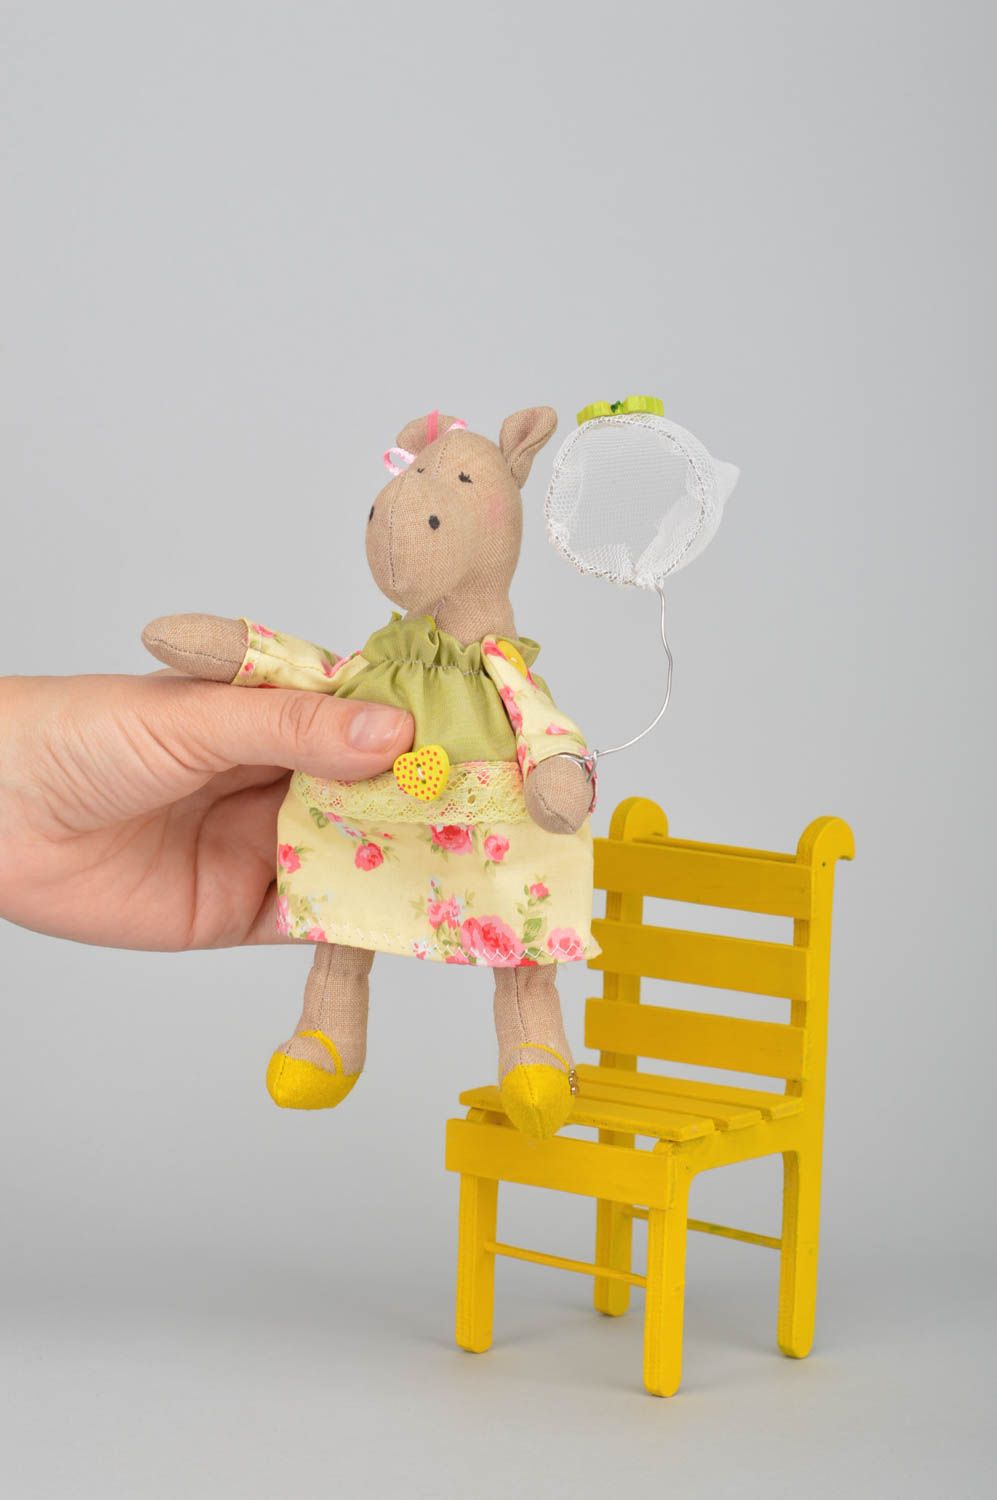 Мягкая игрушка ручной работы из хлопка для декора дома Бегемотик на желтом стуле фото 5